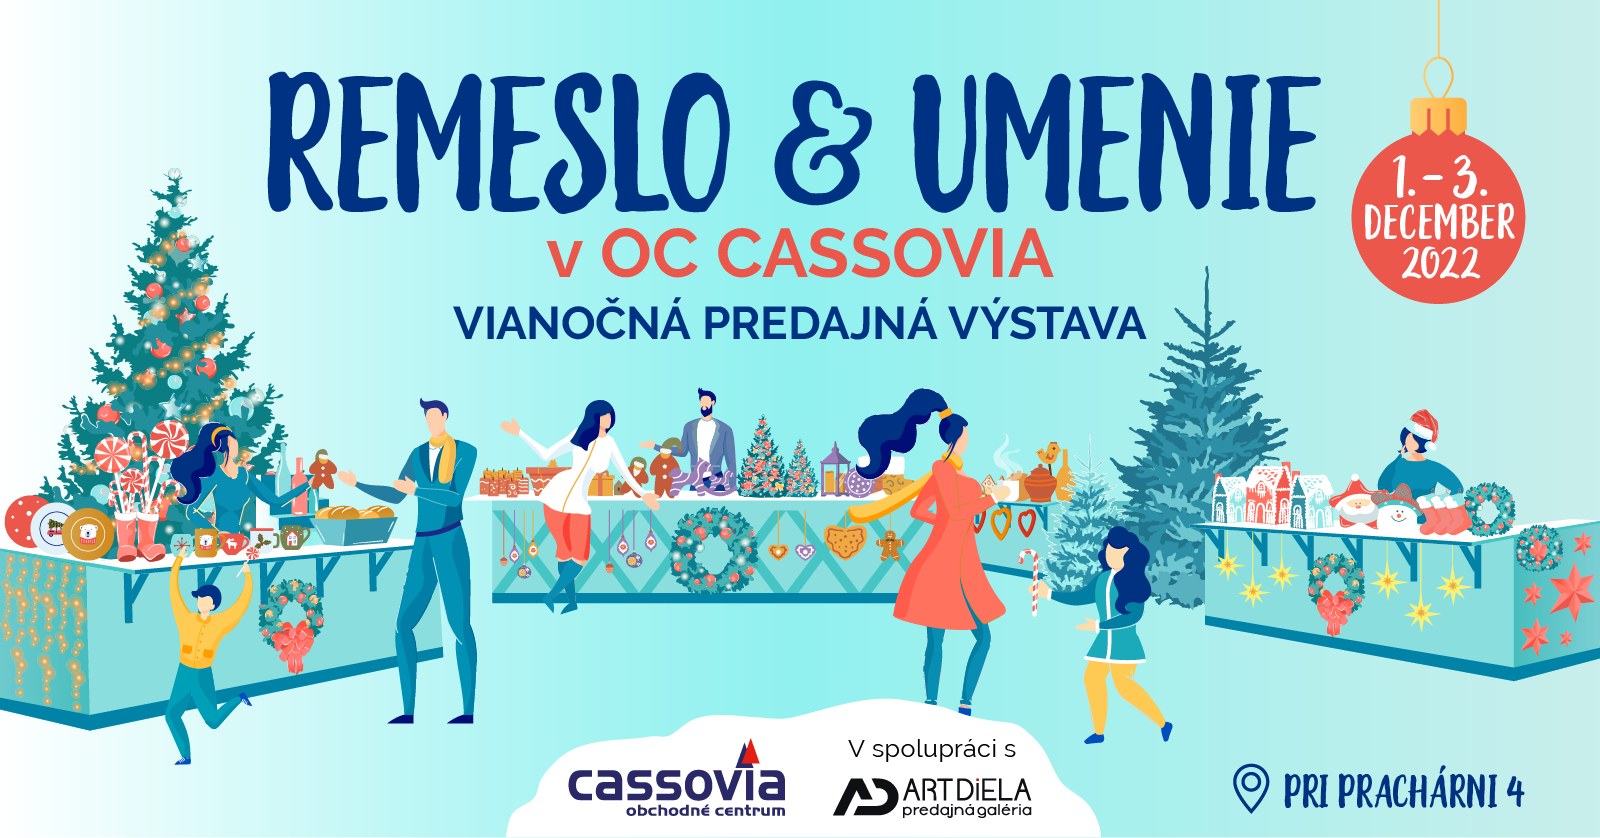 REMESLO & UMENIE - OC Cassovia